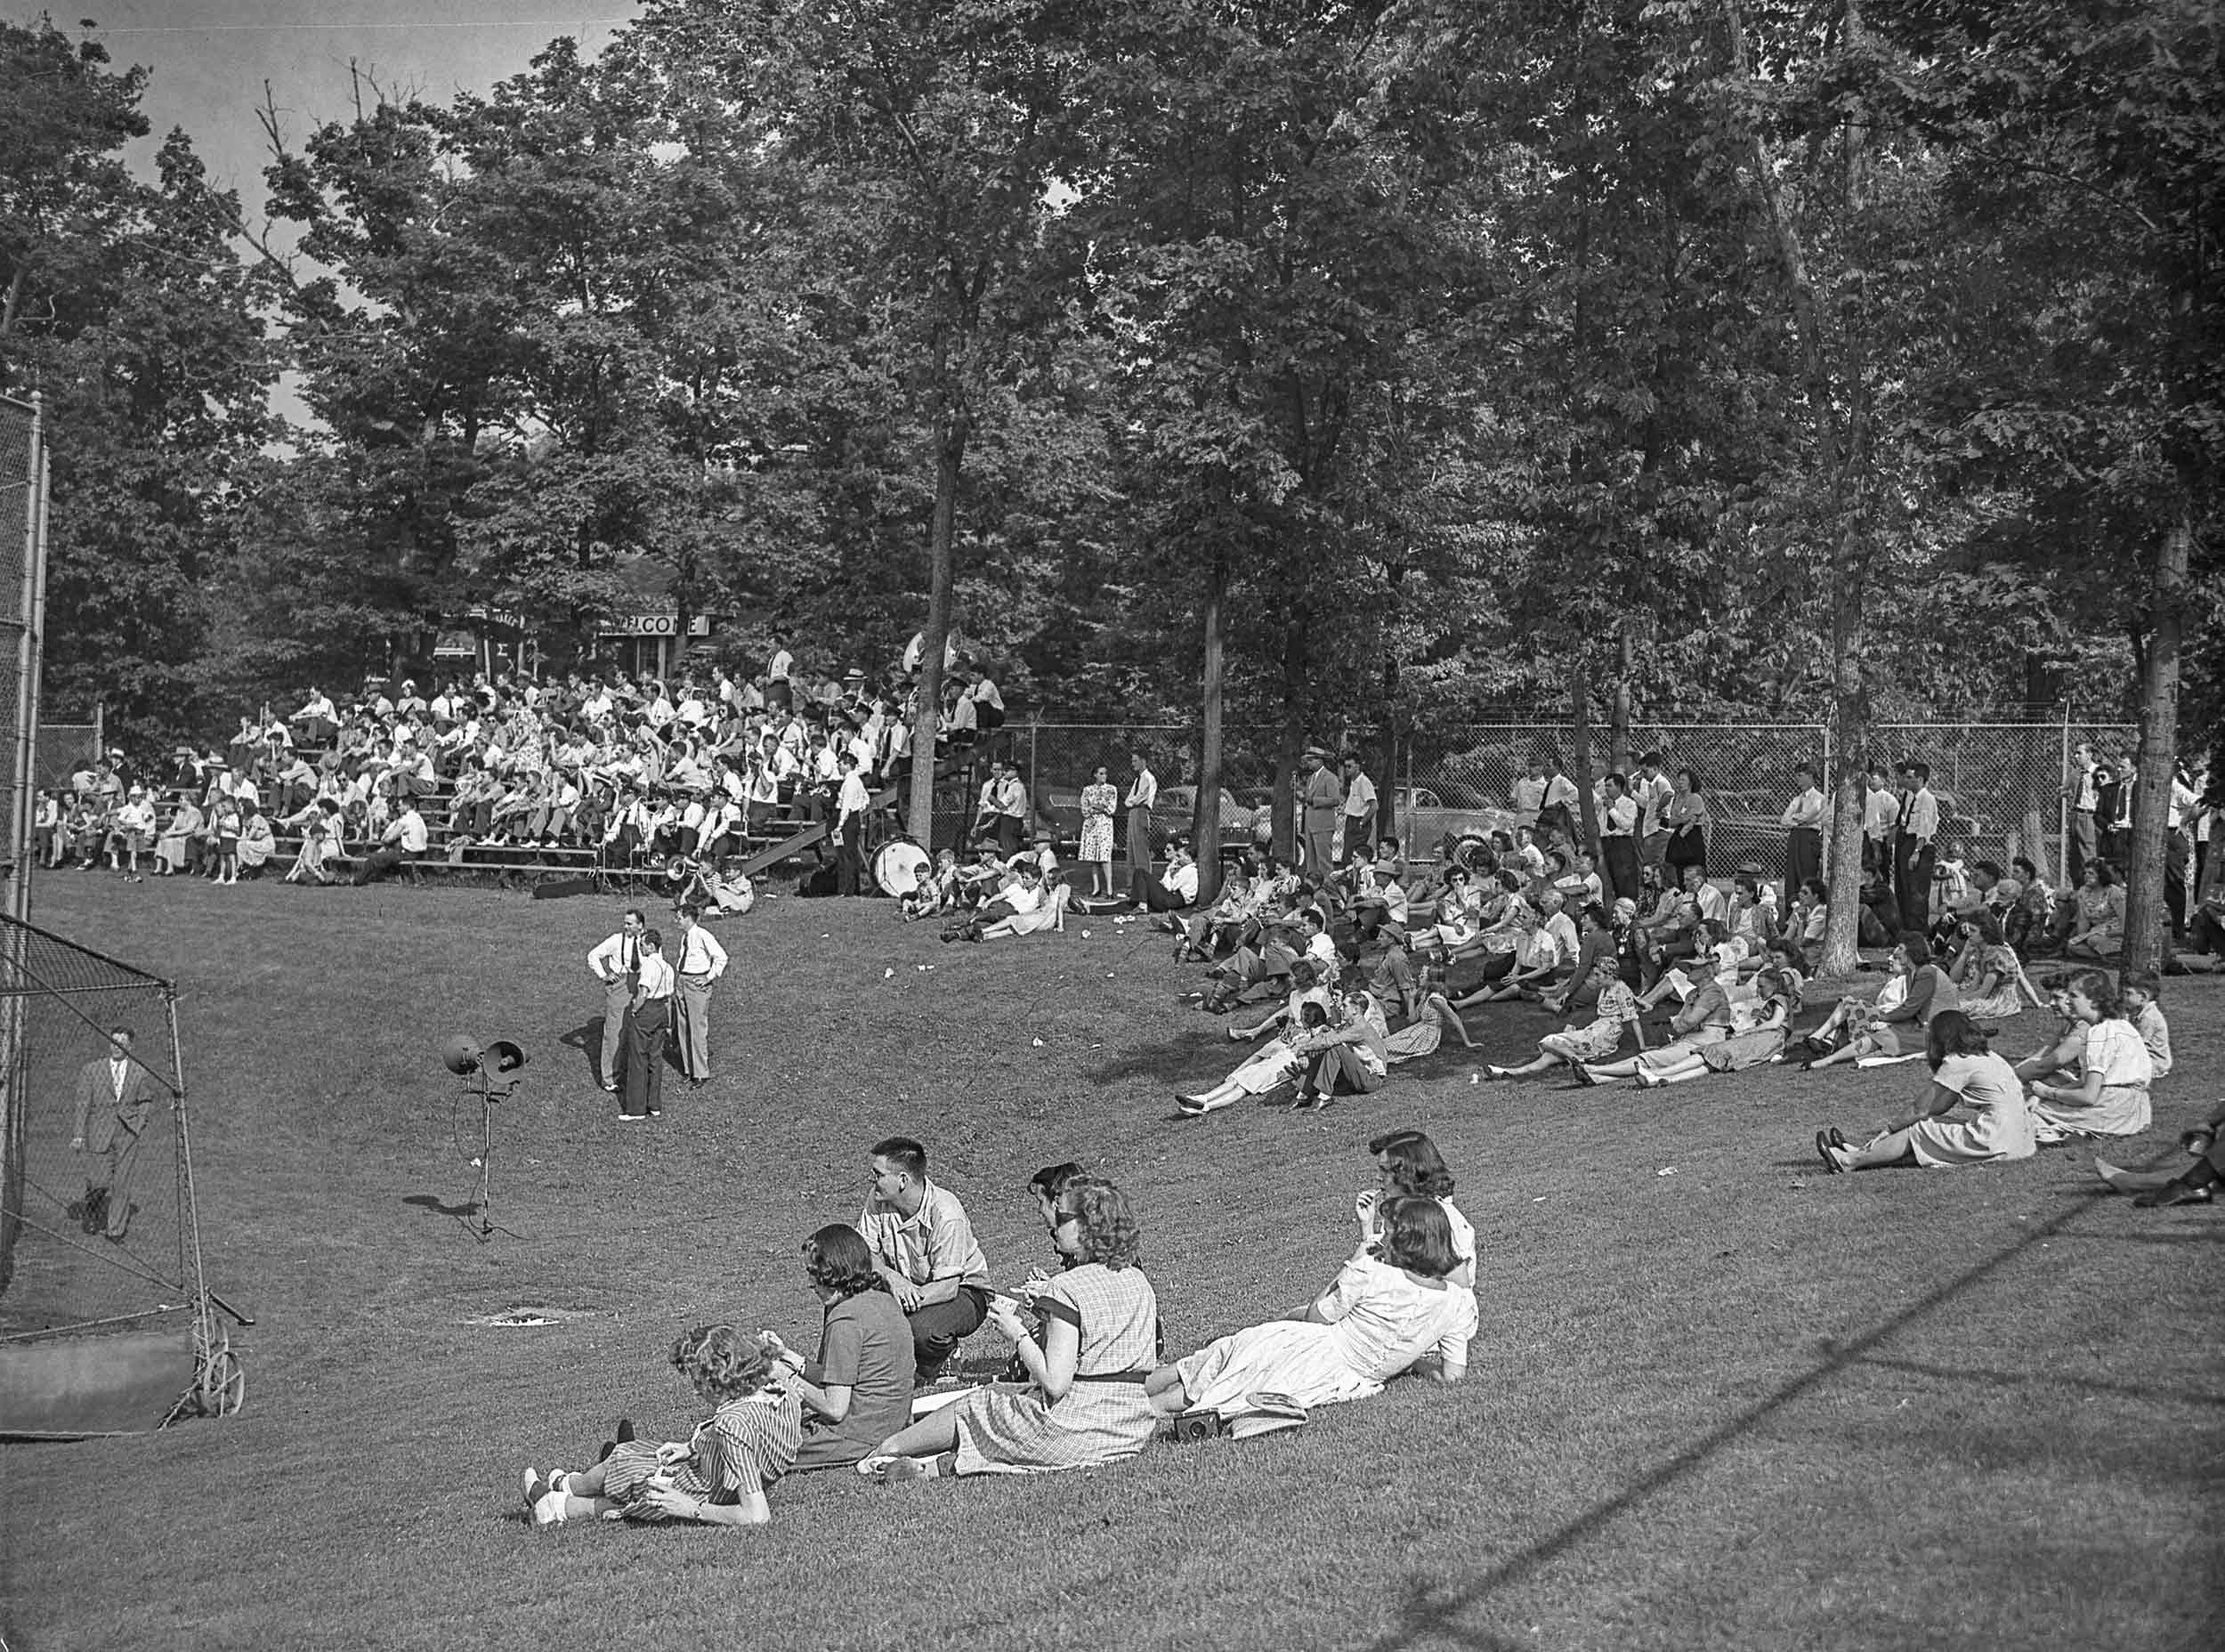 Alumni Day in 1946 - archival image in black and white